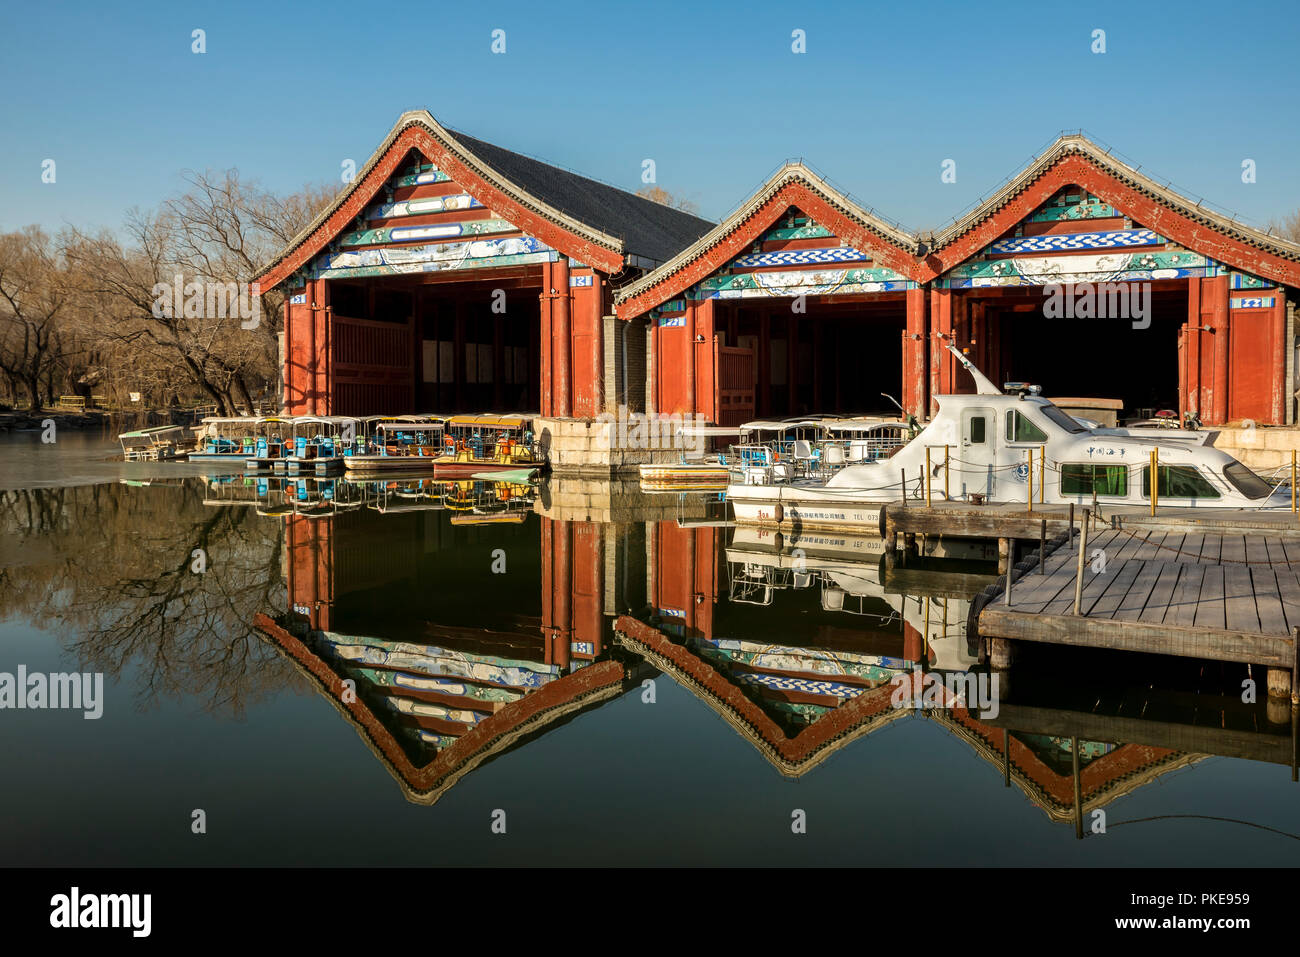 Bateaux de touristes amarré dans le Lac de Kunming, le Palais d'été, à Beijing, Chine Banque D'Images